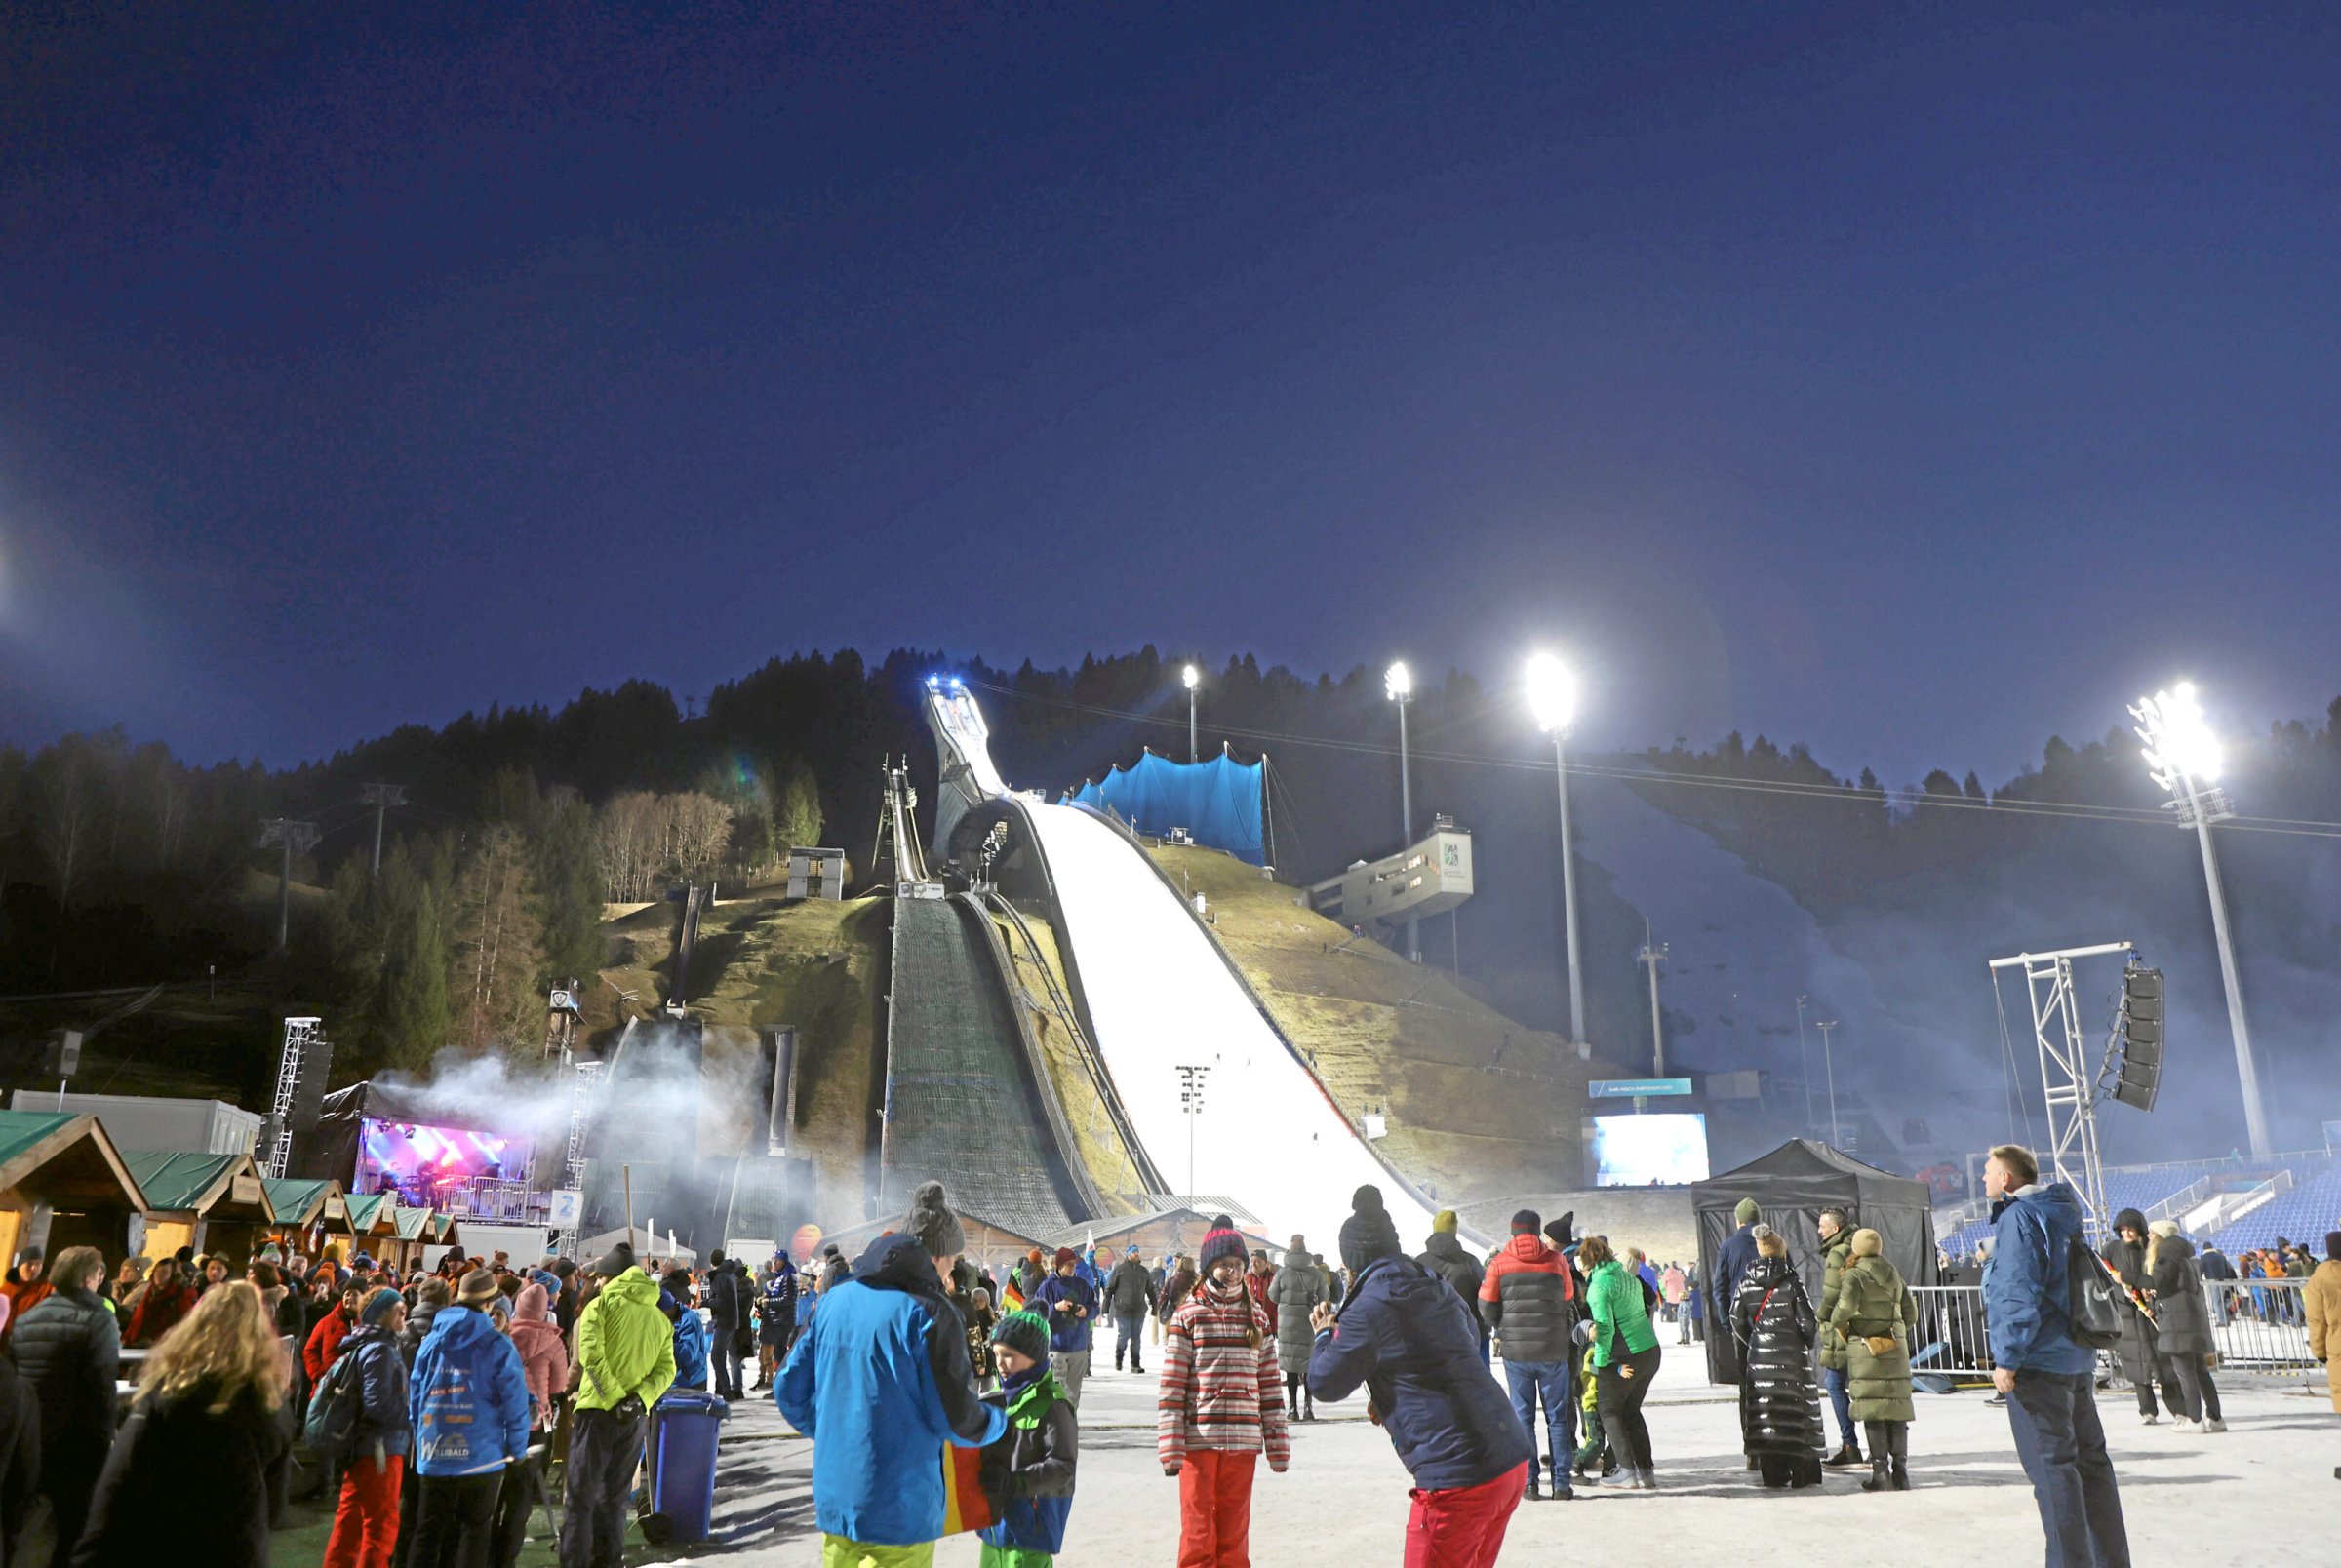 Saut à ski féminin : une véritable tournée n’aura probablement pas lieu avant 2026 pour les sauteuses à ski